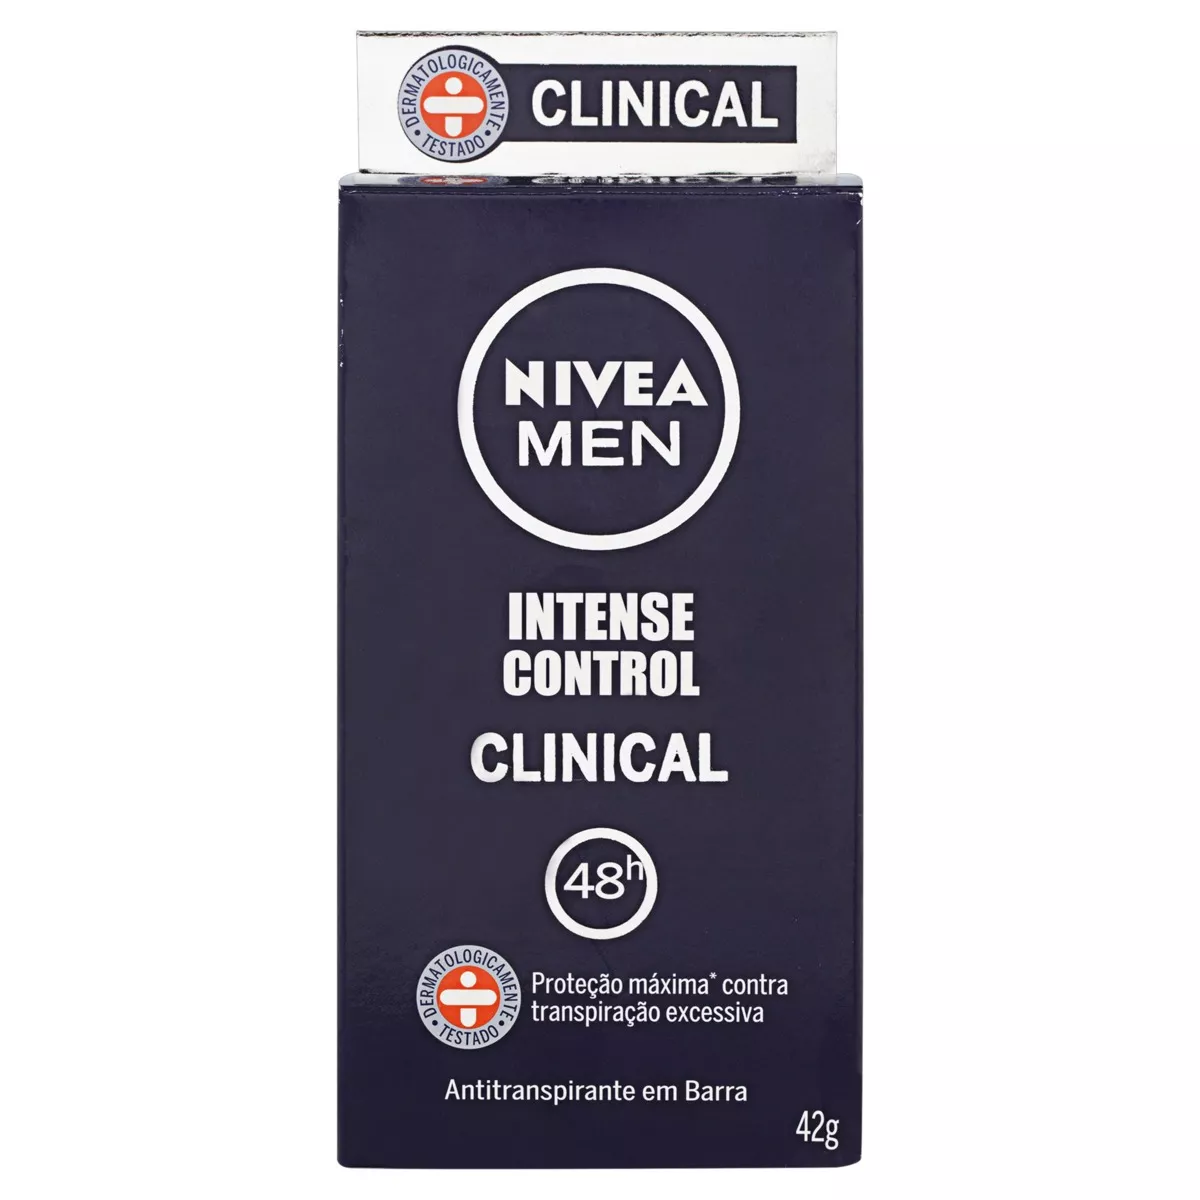 Antitranspirante Em Barra Nivea Men Clinical Intense Control 42 G